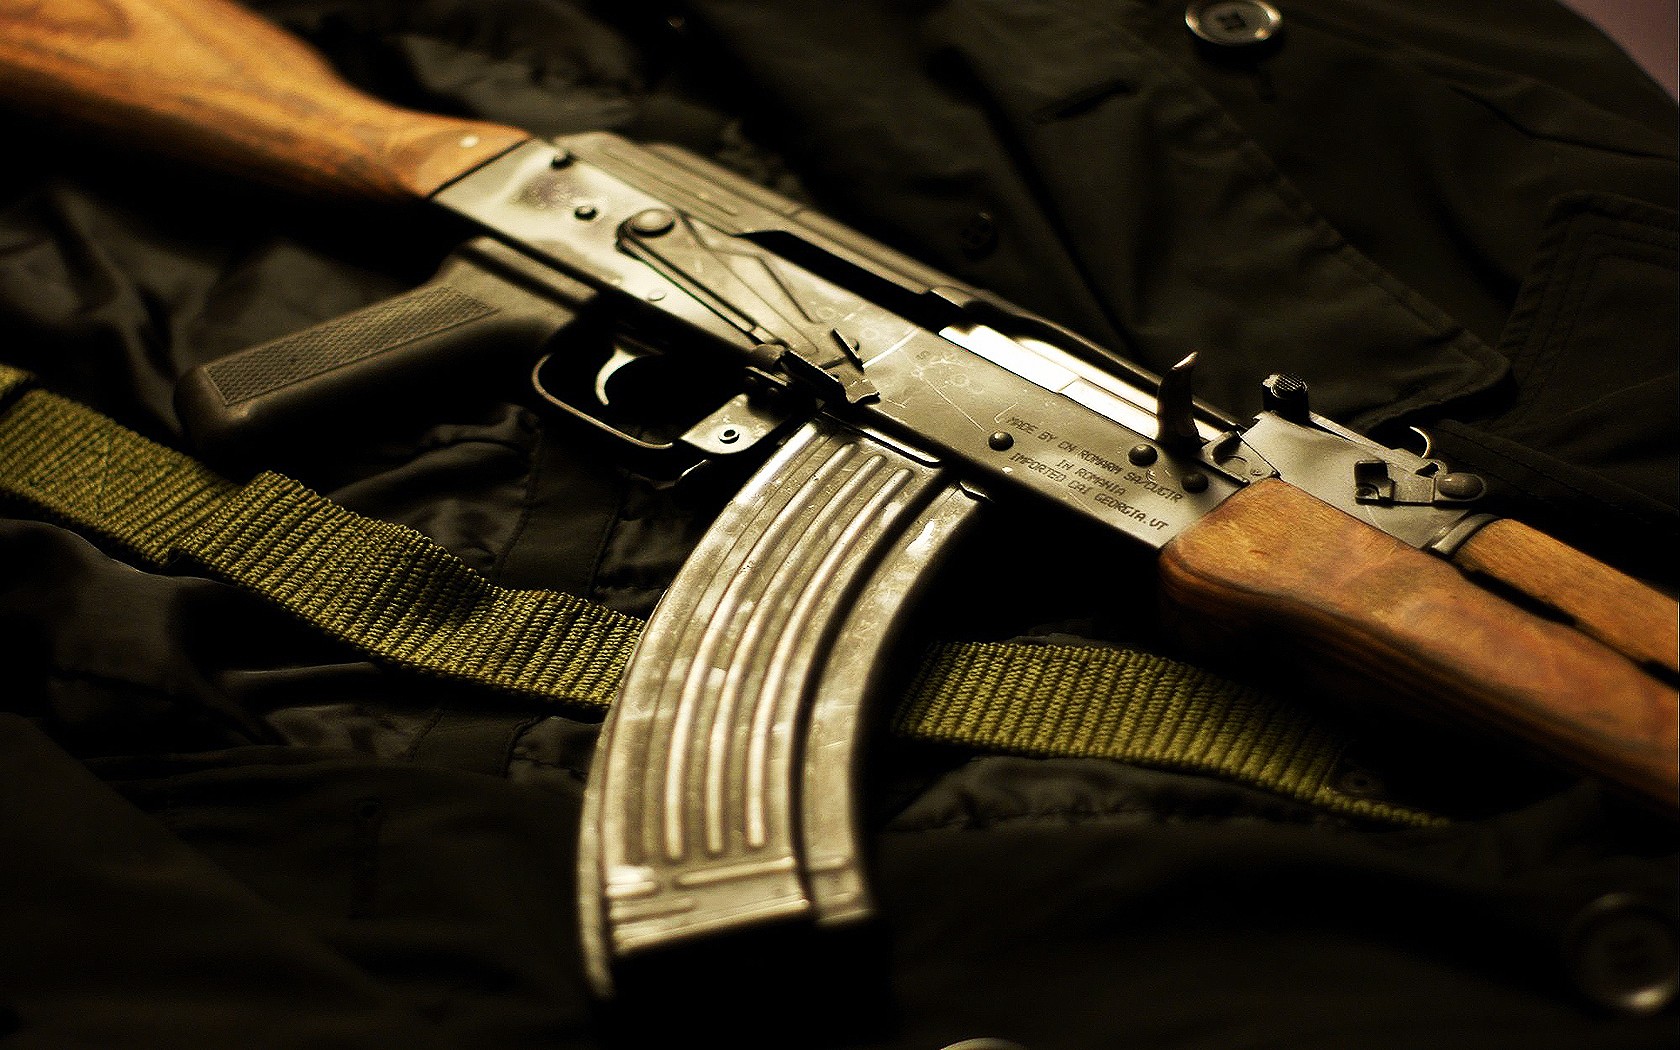 General 1680x1050 weapon gun WASR AK-47 WASR 10 rifles assault rifle Russian/Soviet firearms